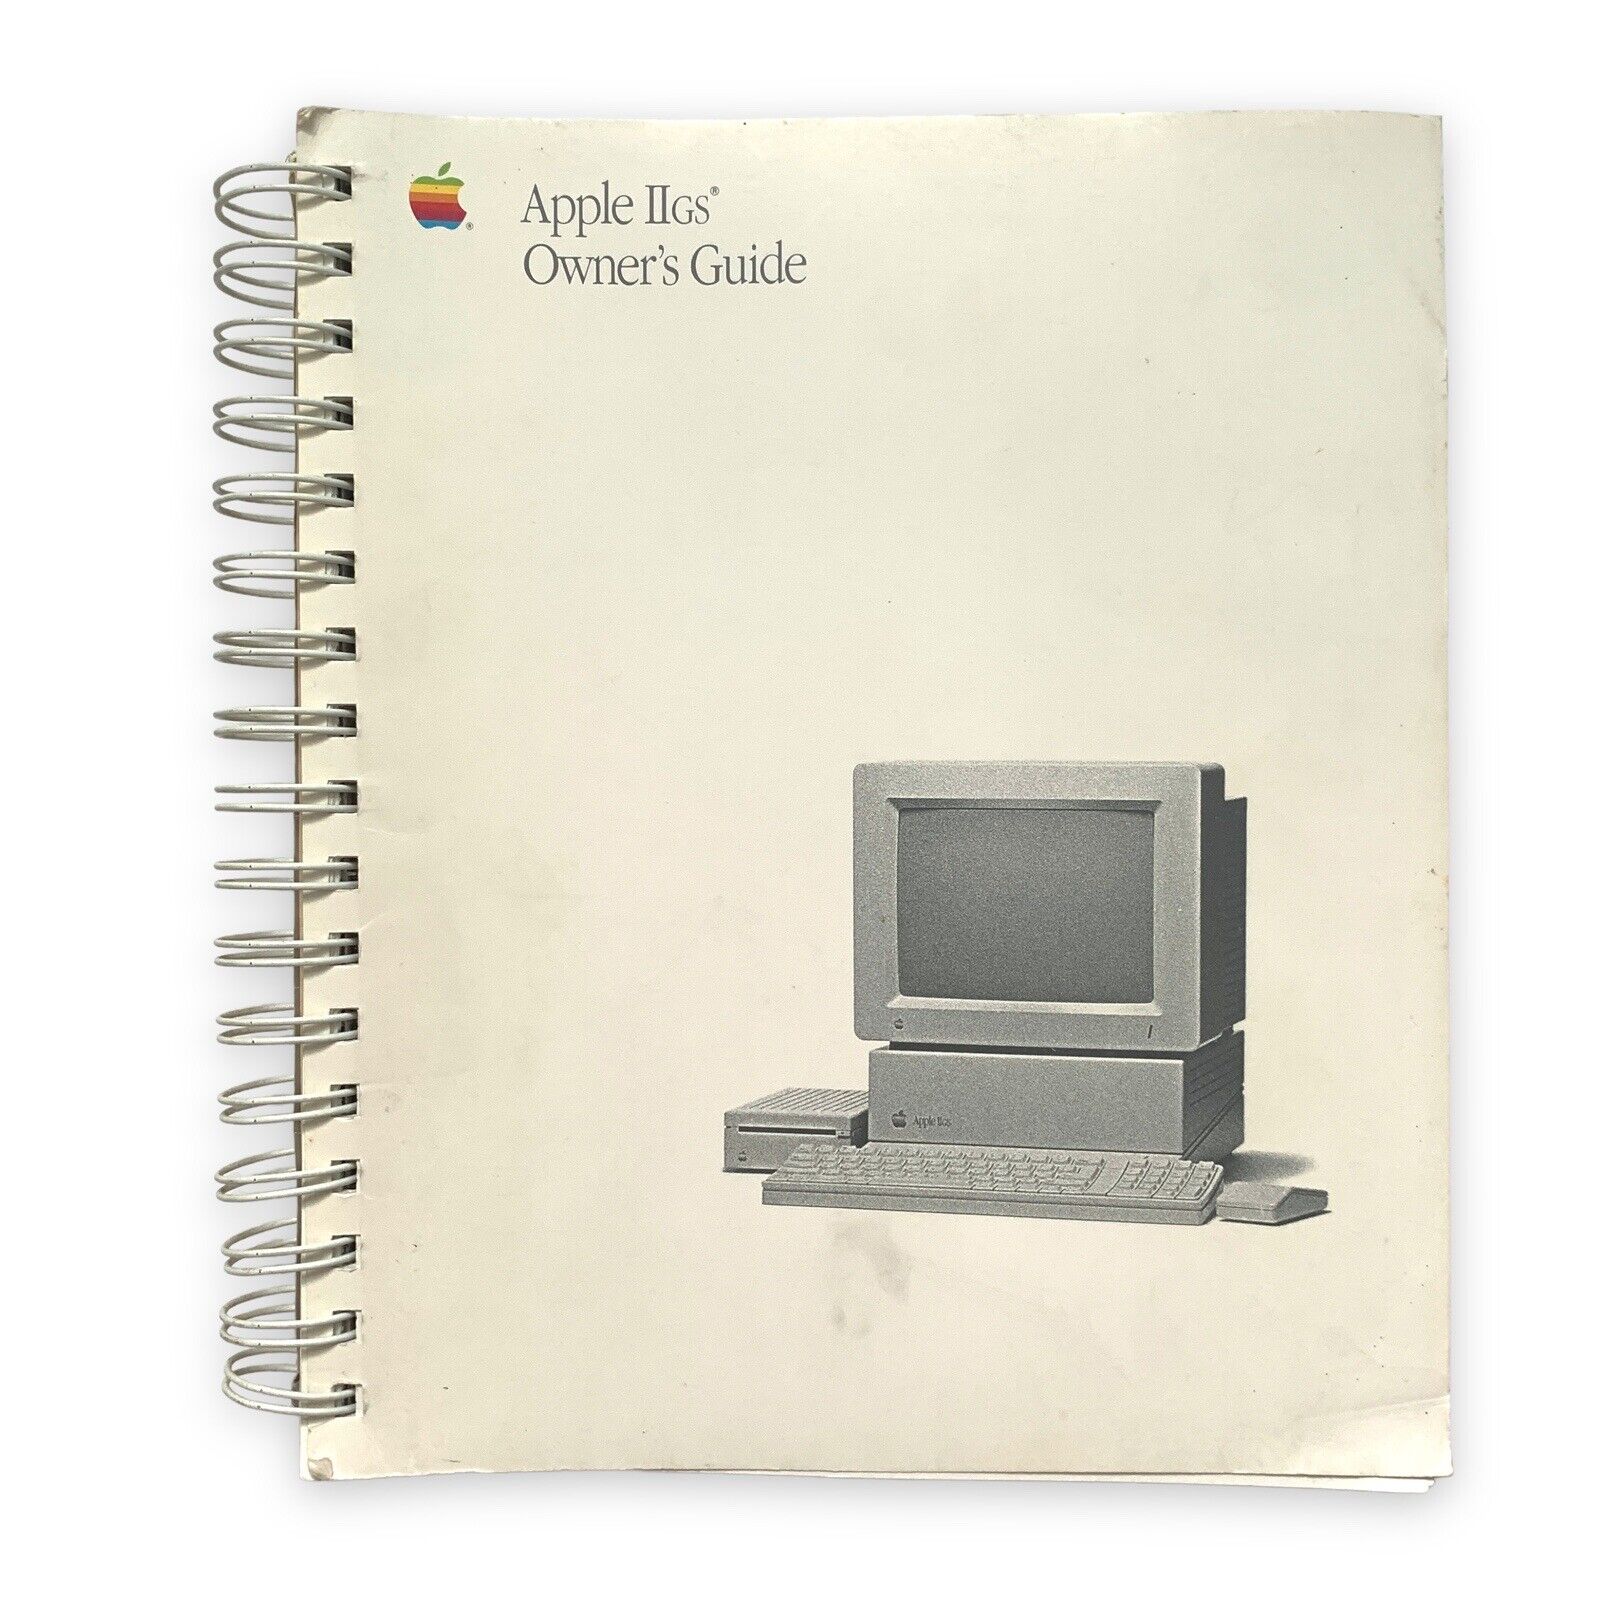 VTG 1988 Apple IIgs Owner’s Guide Manual II gs #2